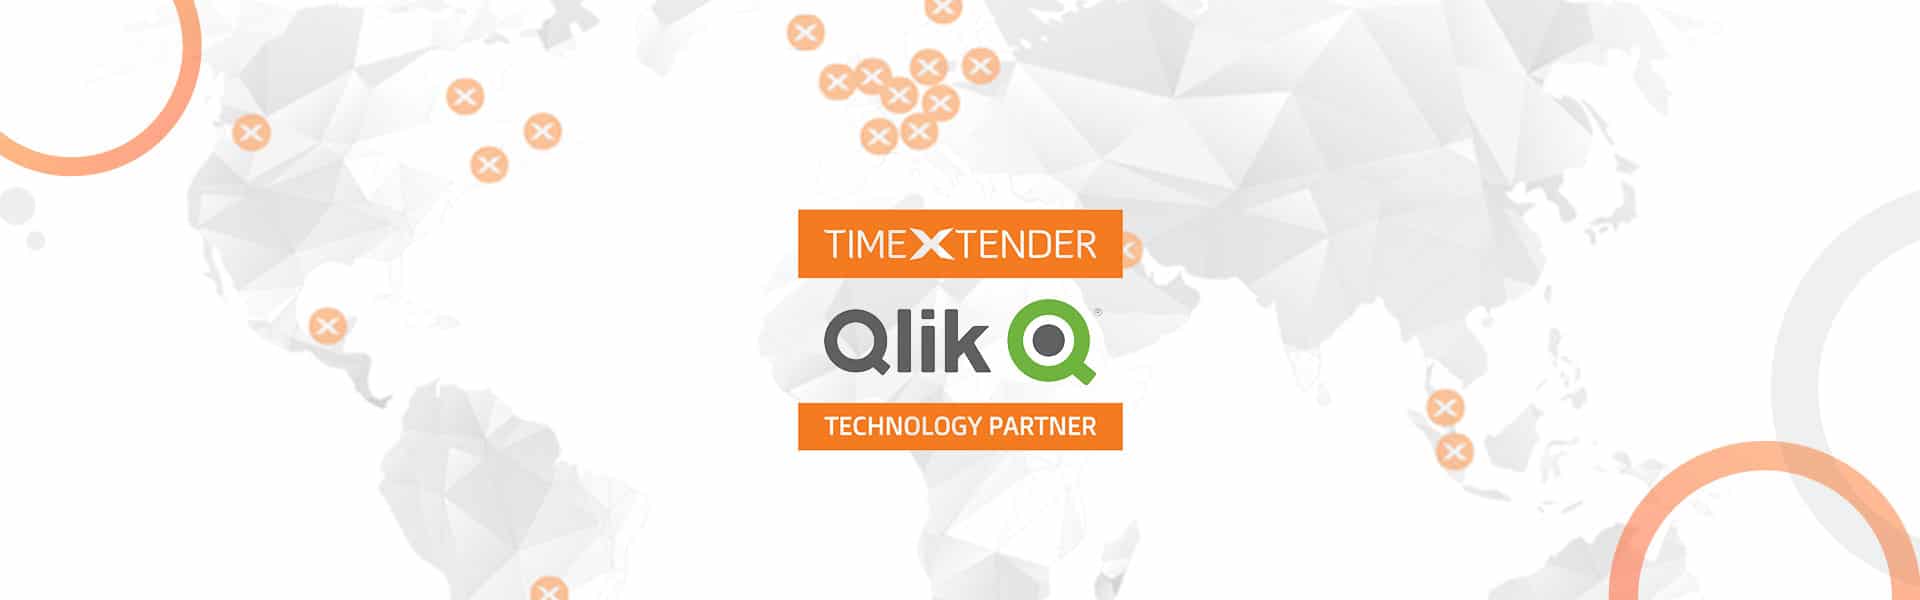 timextender,timextender software,datawarehouse automation, worldmap,qli,qlik technology partner